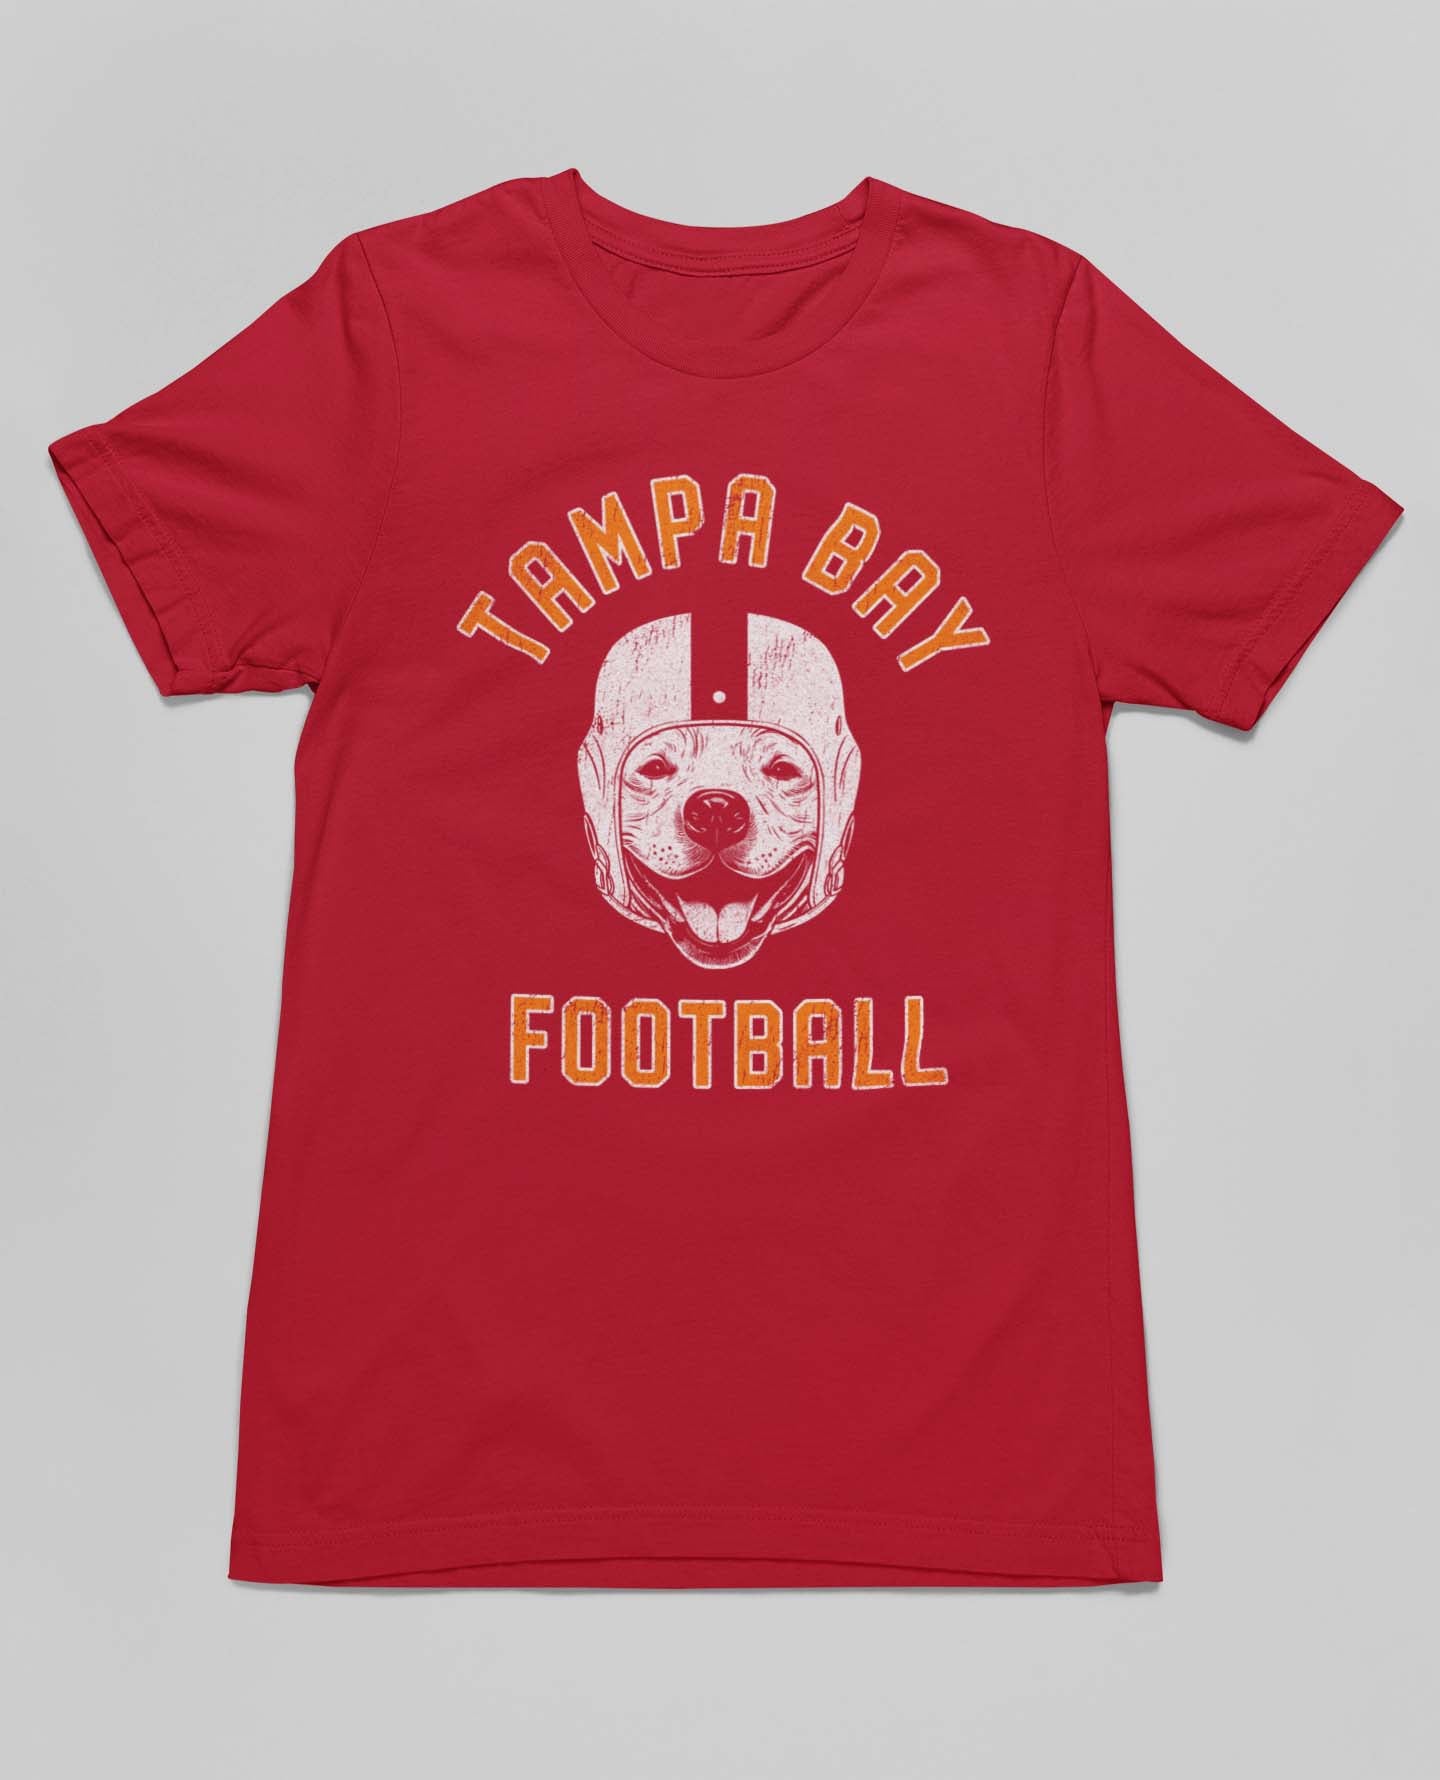 Tampa Bay Football Pitbull T-Shirt